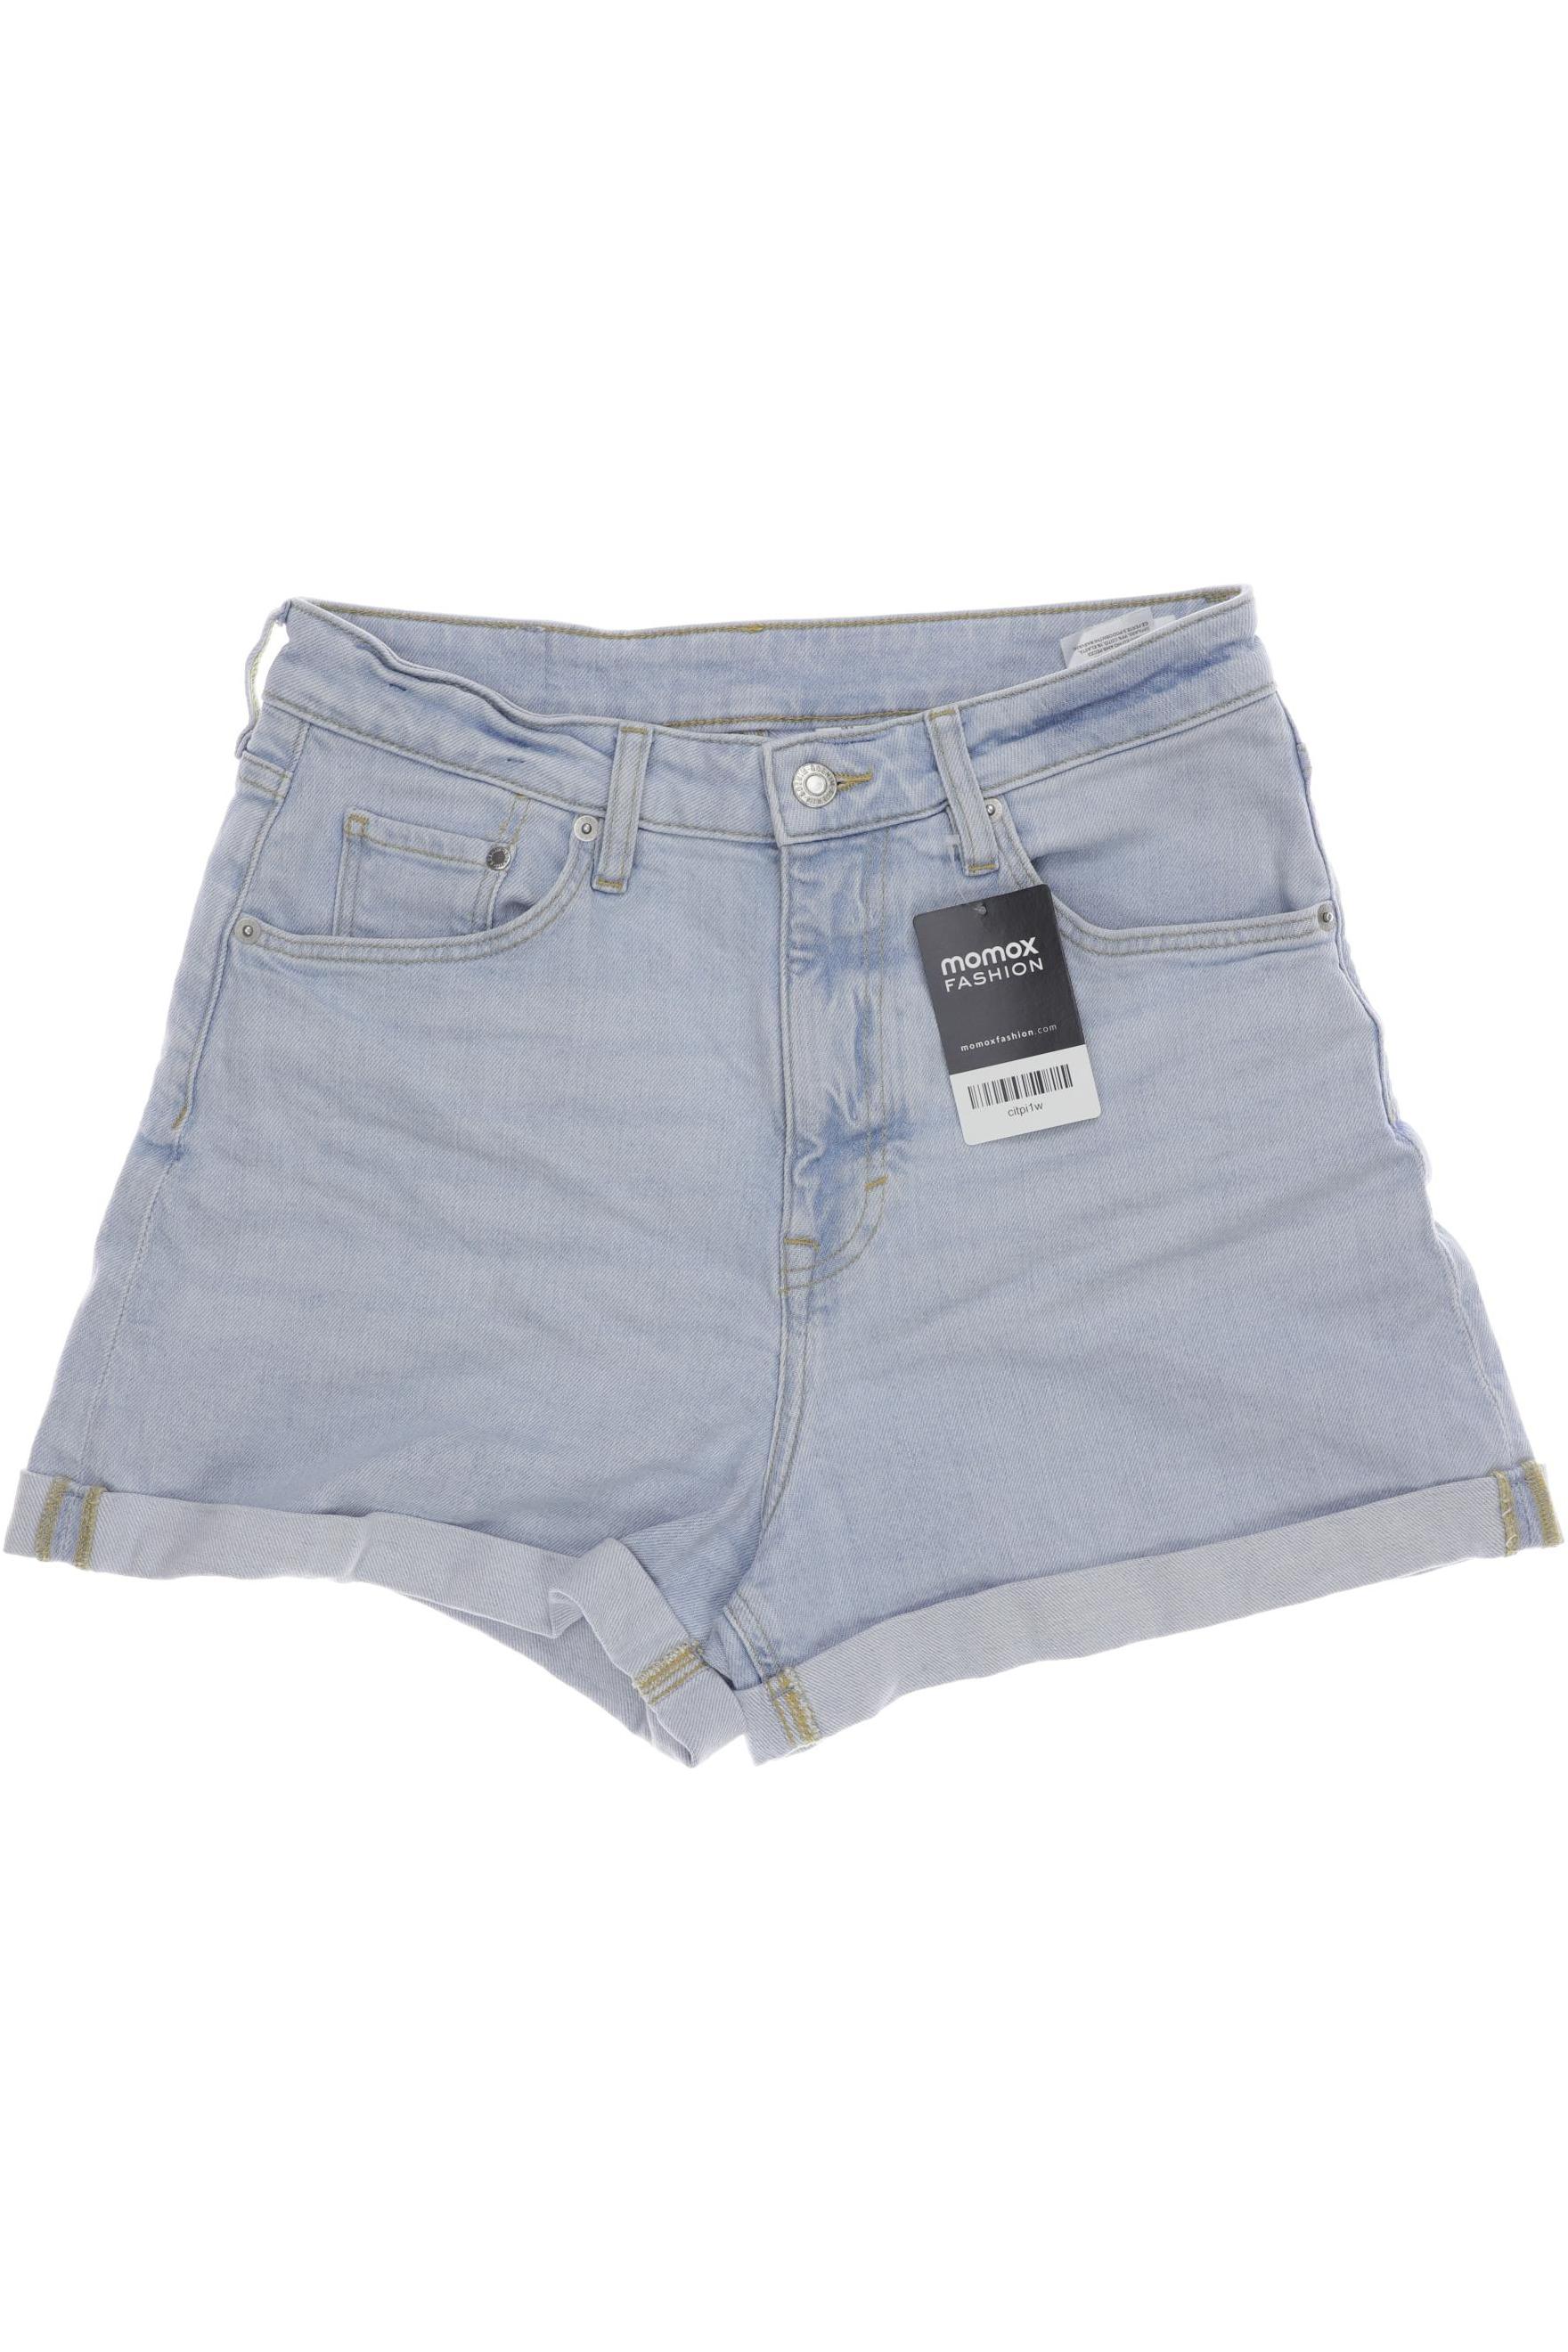 H&M Damen Shorts, hellblau, Gr. 36 von H&M